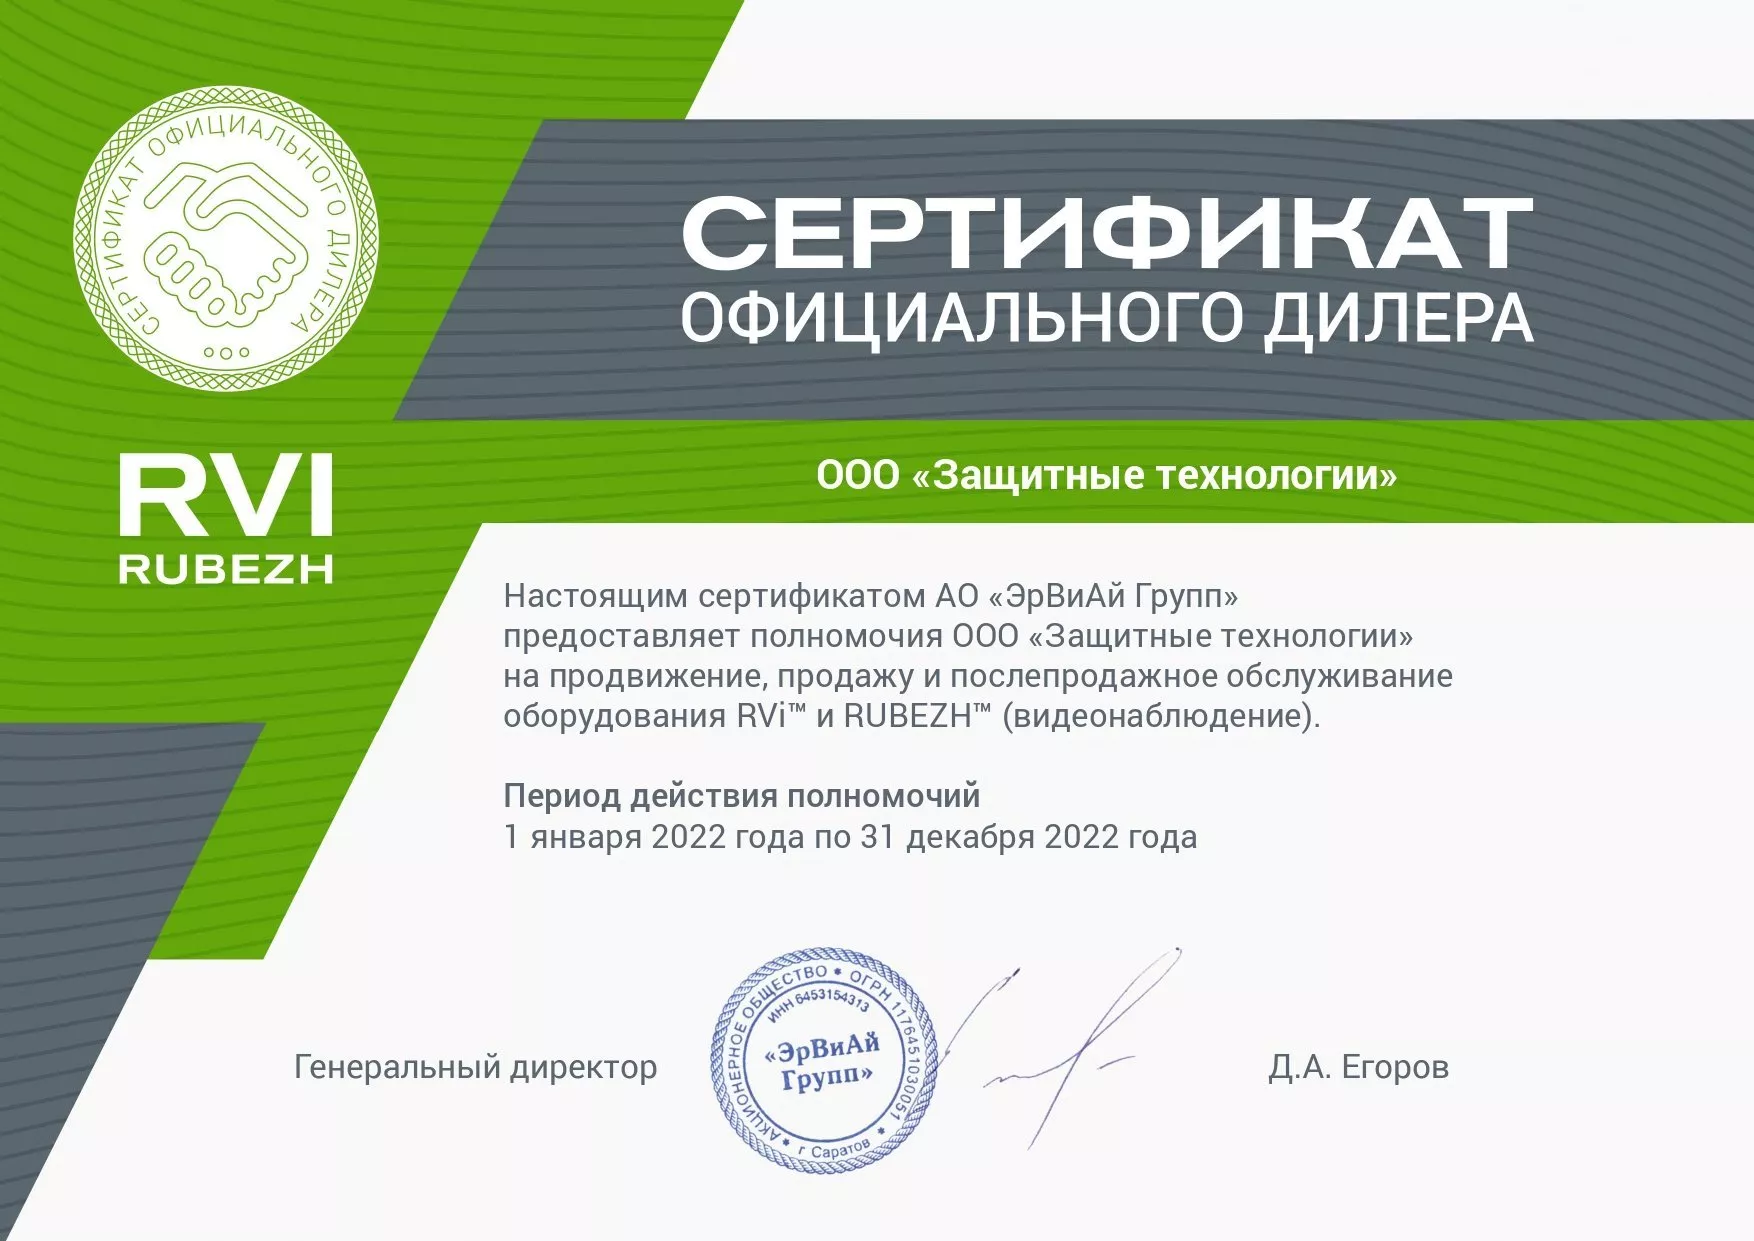 Сертификат официального дилера RVi 2022